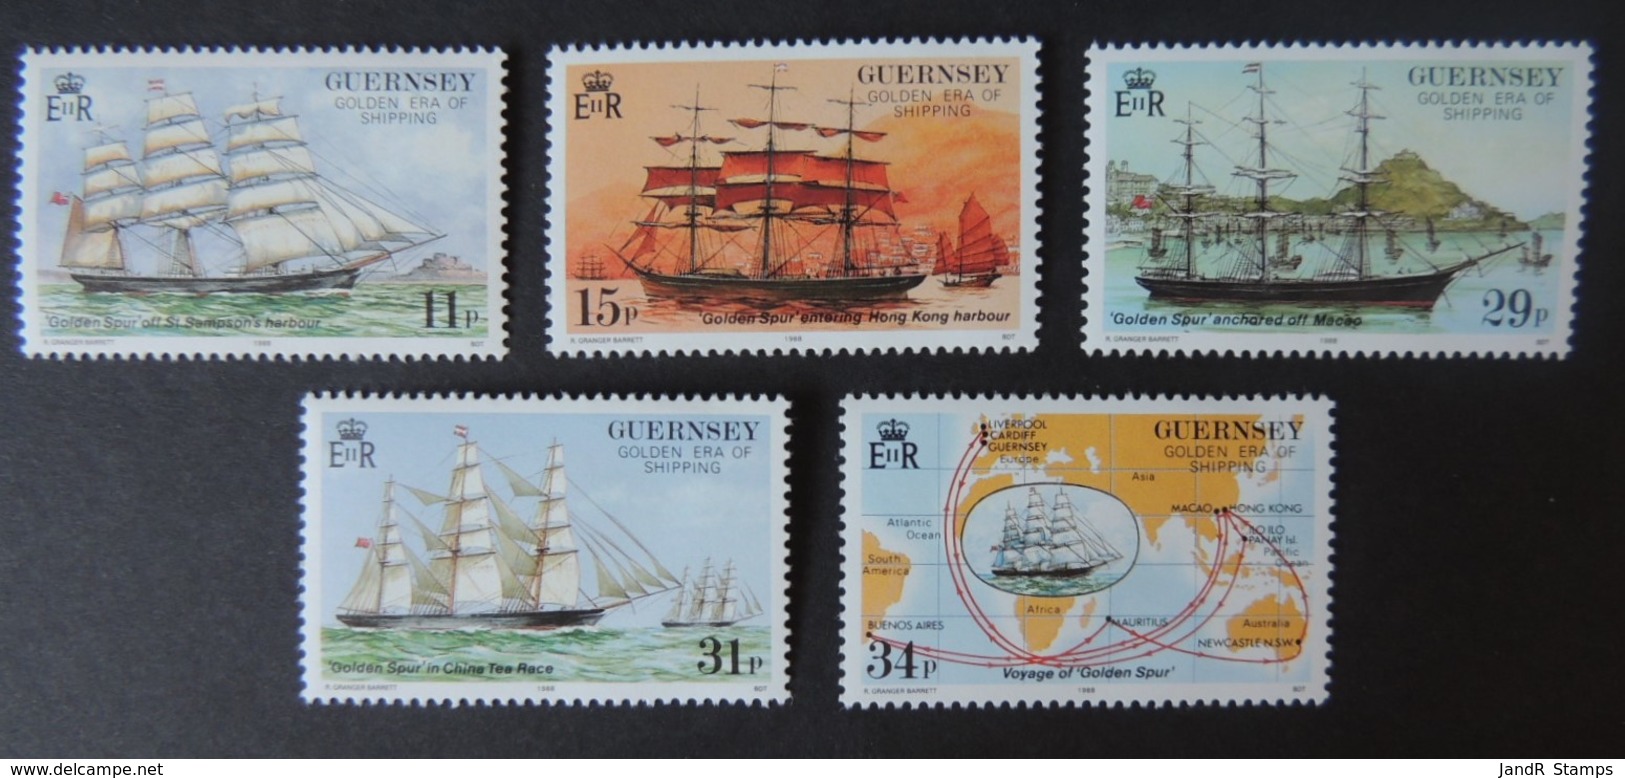 GUERNSEY 1987 SHIPPING SG415-419 MNH SET 5 VALUES GOLDEN SPUR SAILING SHIPS - Guernsey